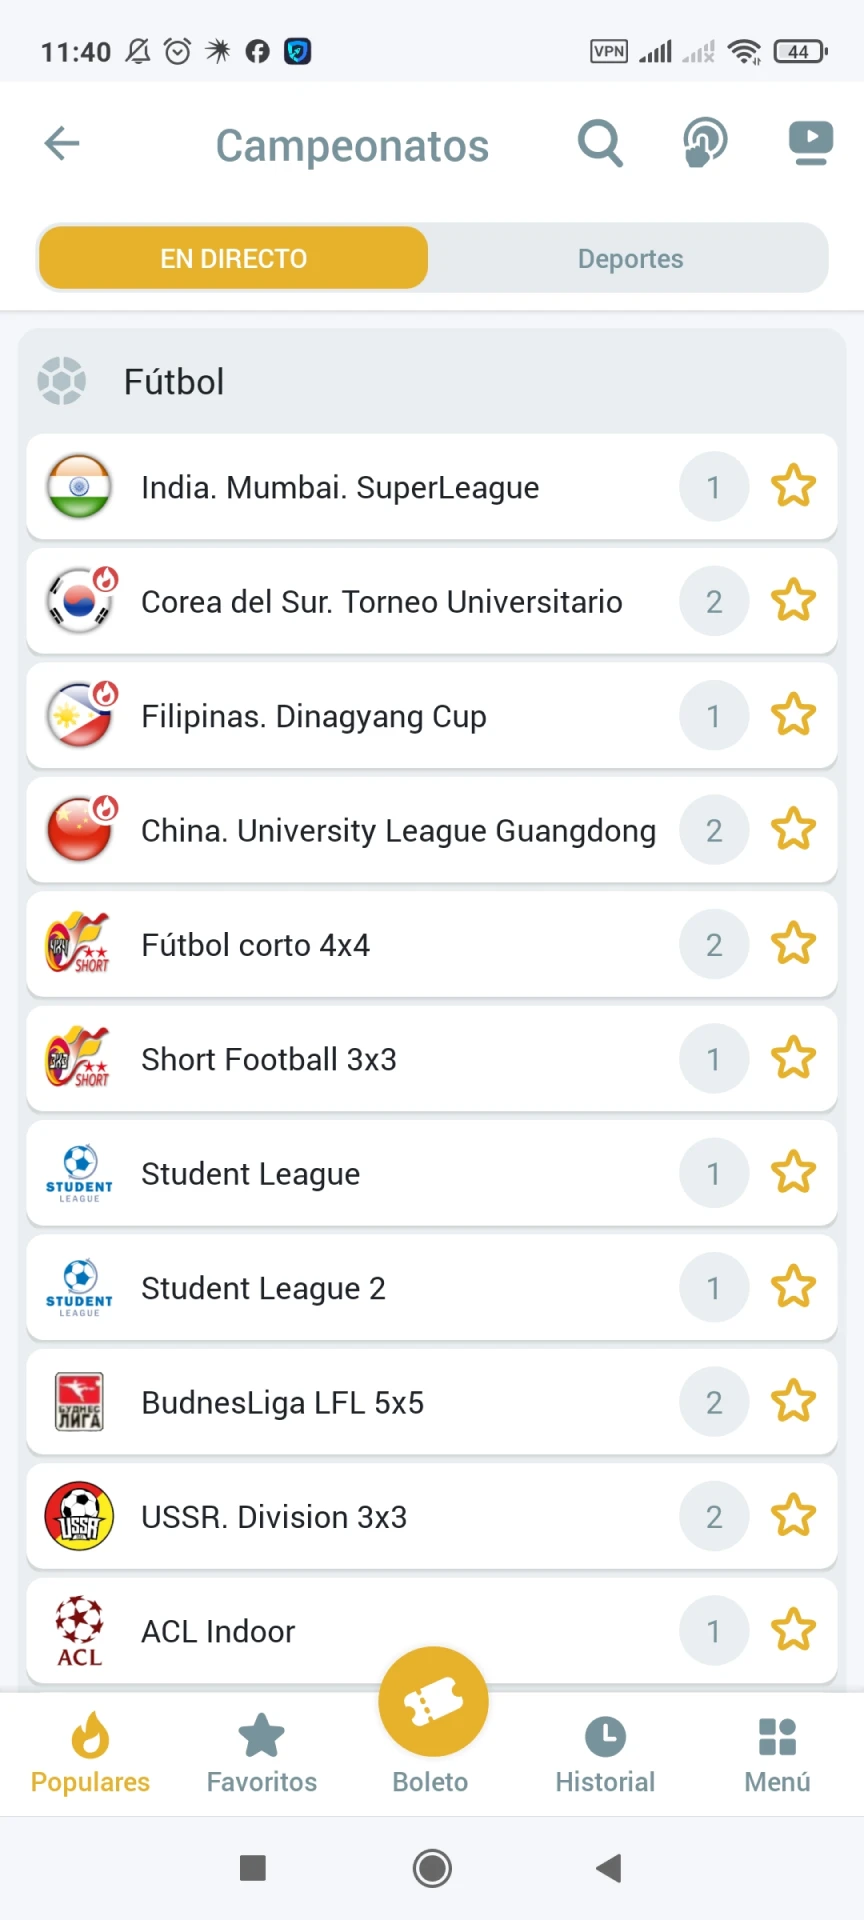 Visite a página de apostas em futebol no aplicativo Melbet.